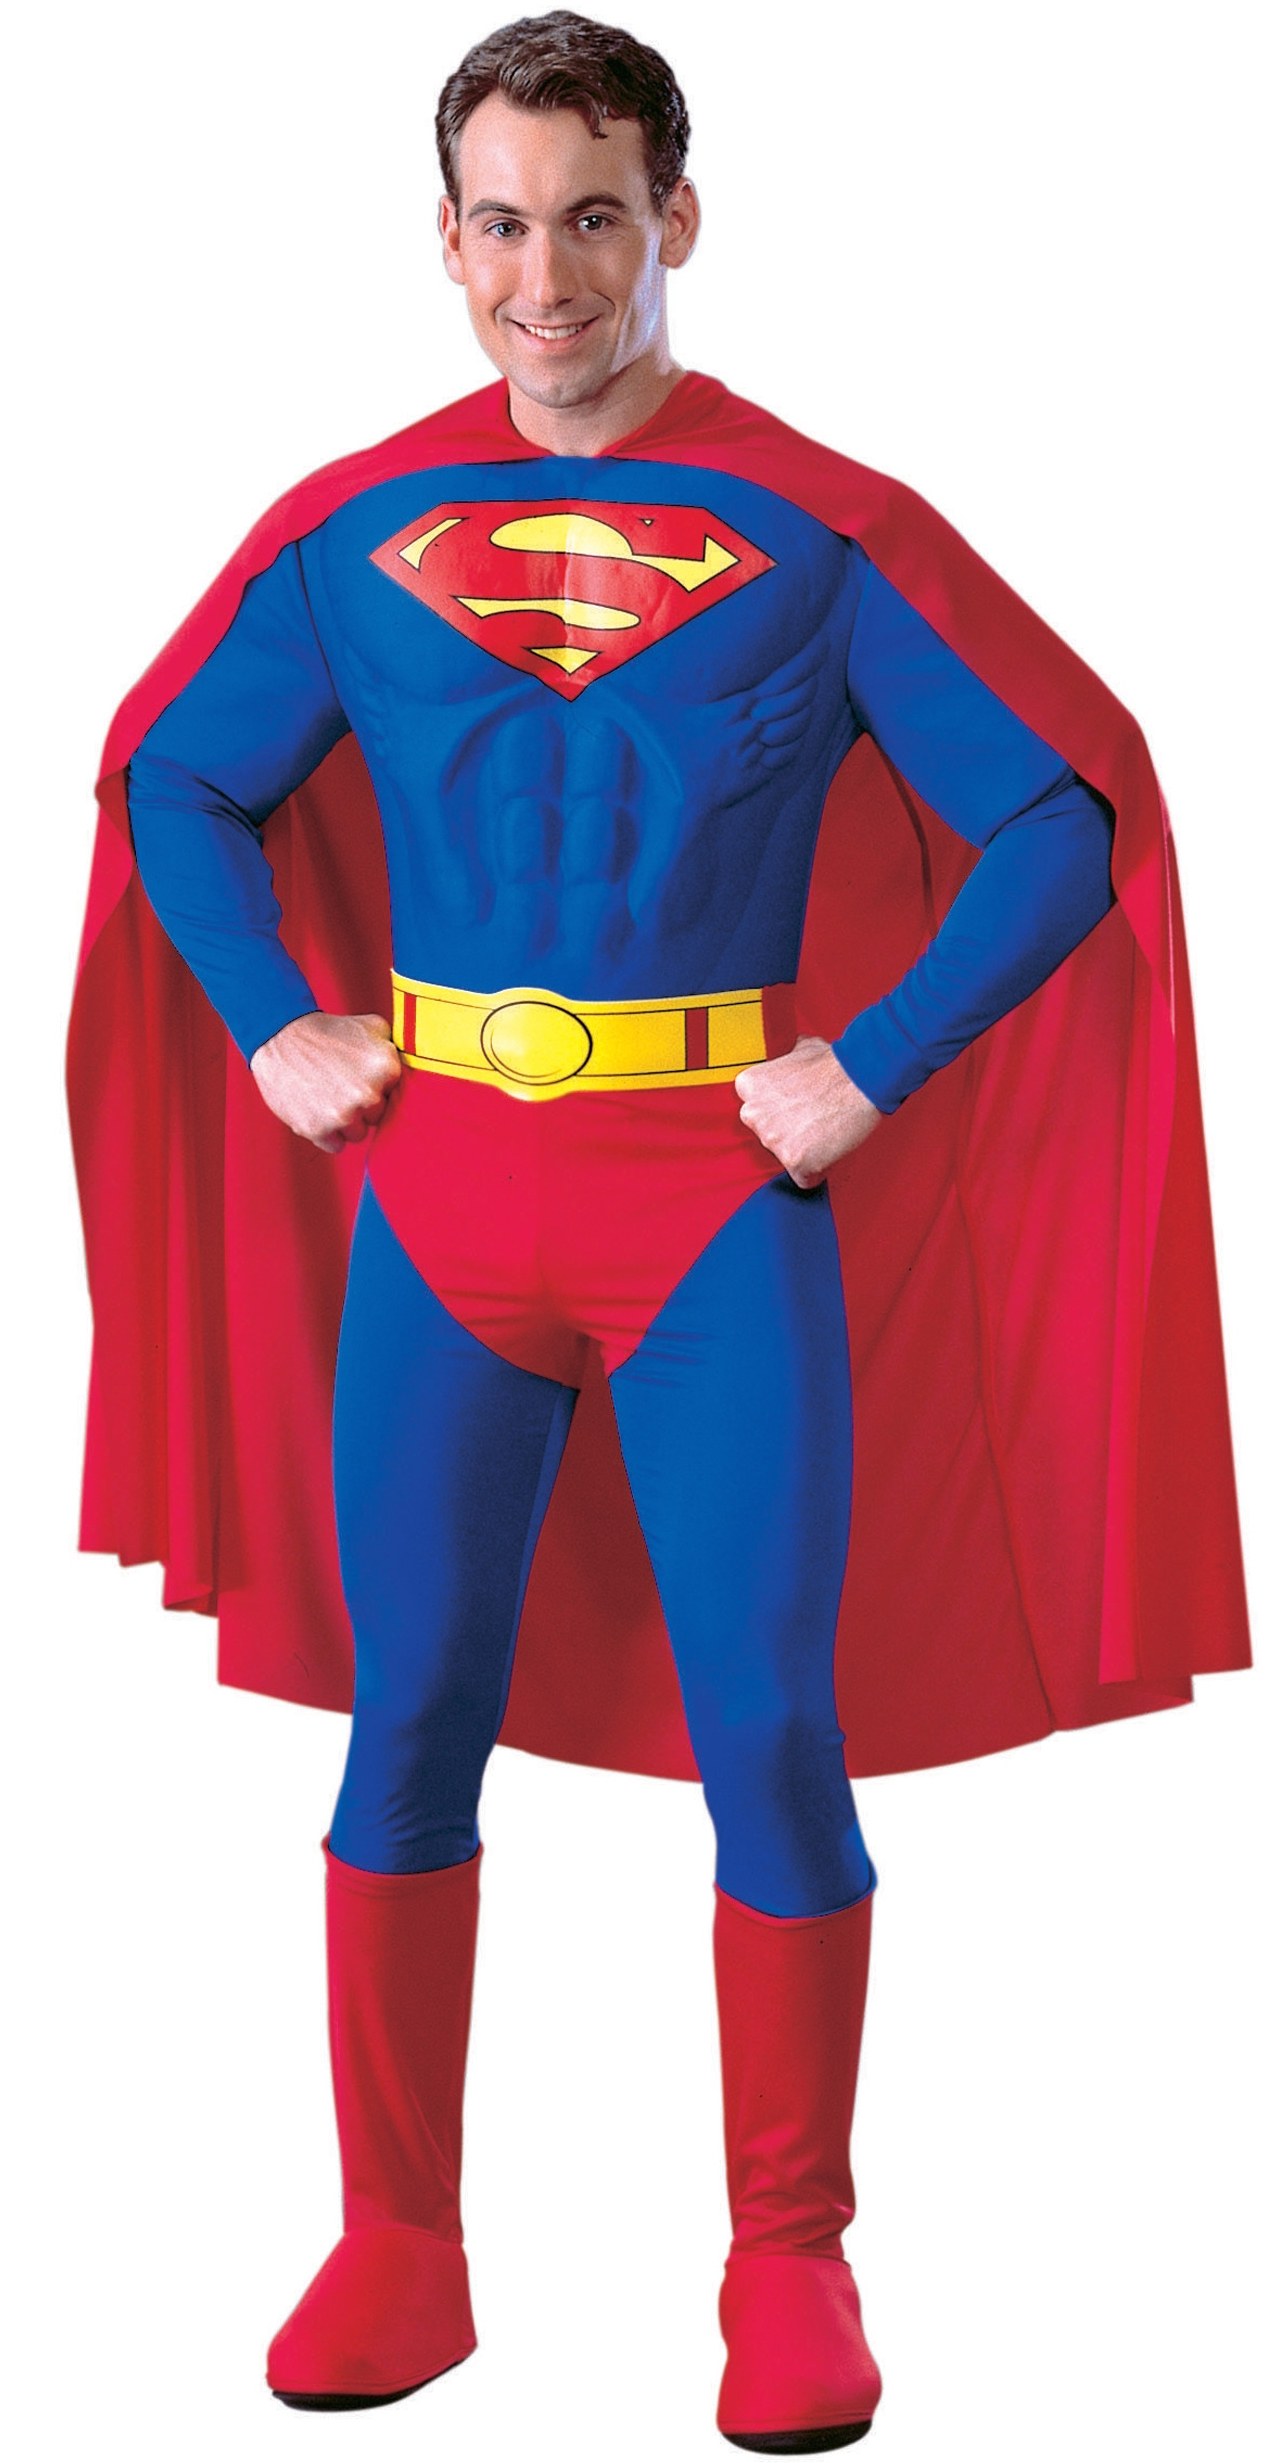 Superman Returns Suit Replica